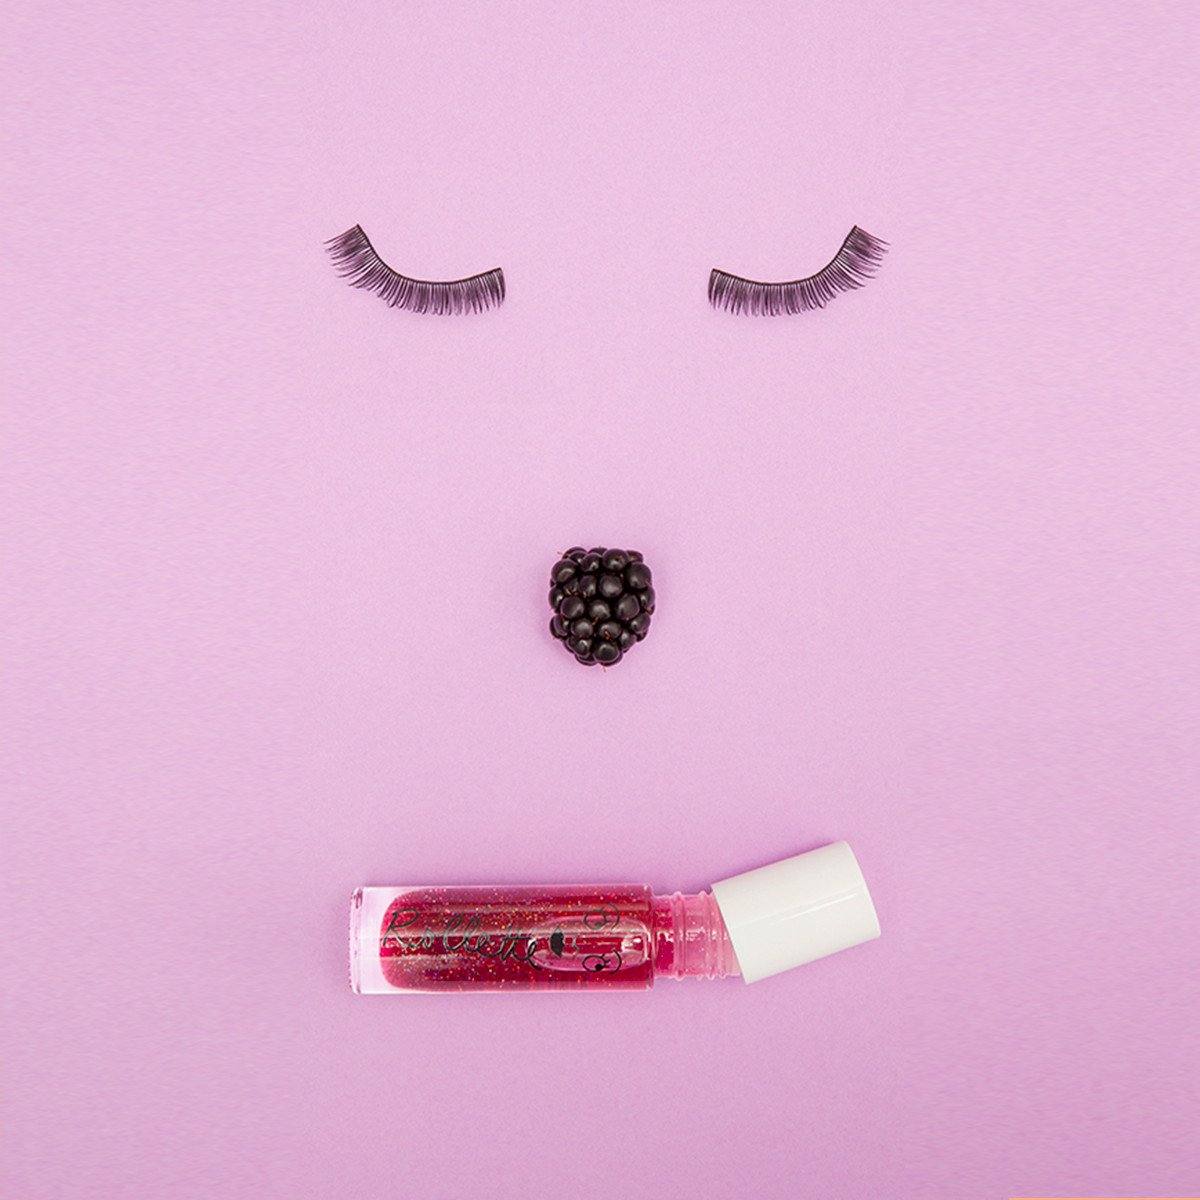 Blackberry Rollette Roll-On Lip Gloss